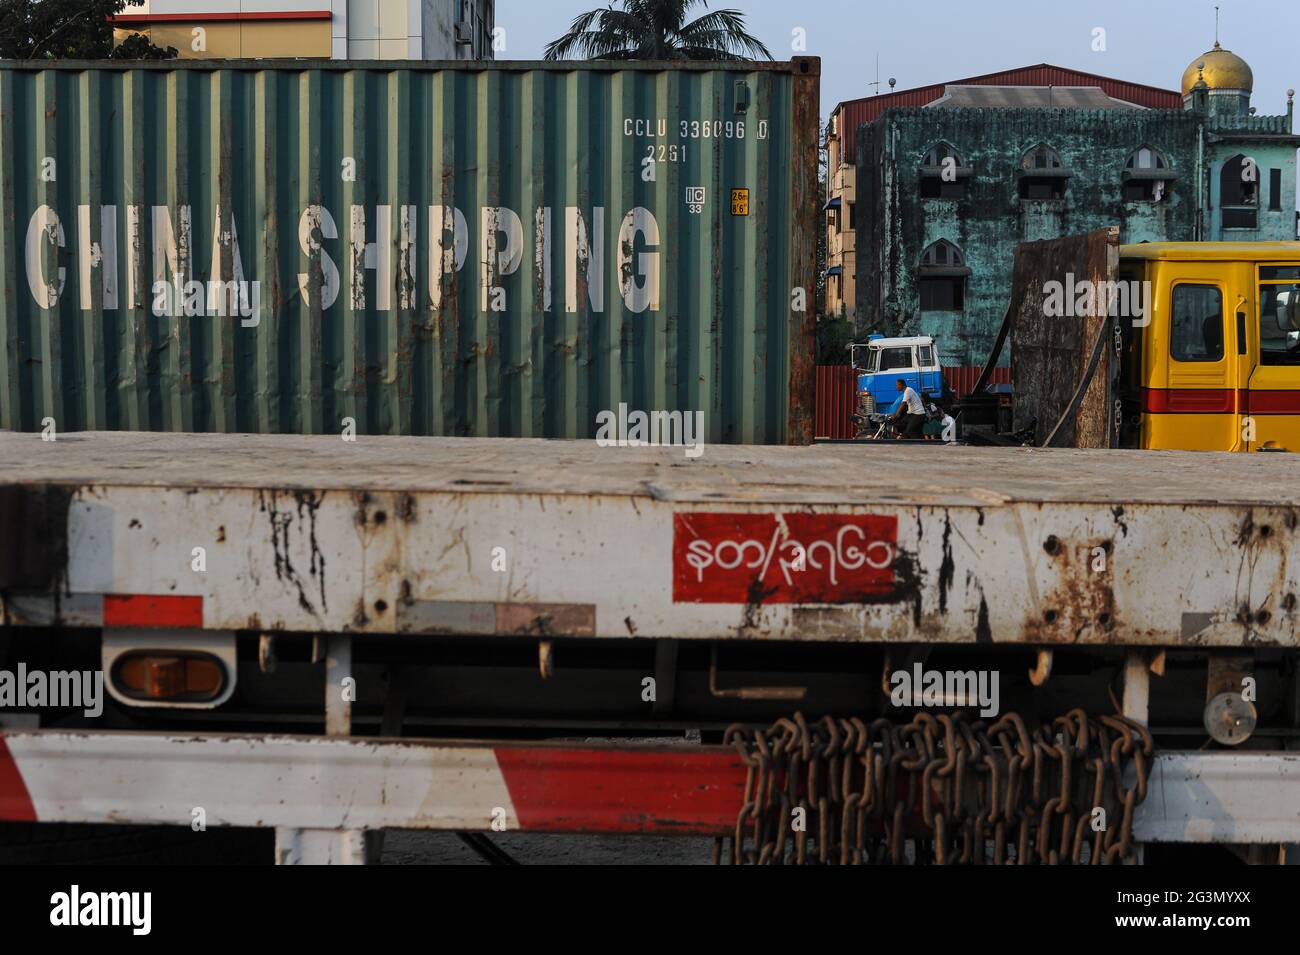 '10.02.2014, Yangon, , Myanmar - EIN Seefrachtcontainer des chinesischen Transportunternehmens China Shipping wird auf einem LKW-Anhänger am Hafen geparkt. Stockfoto